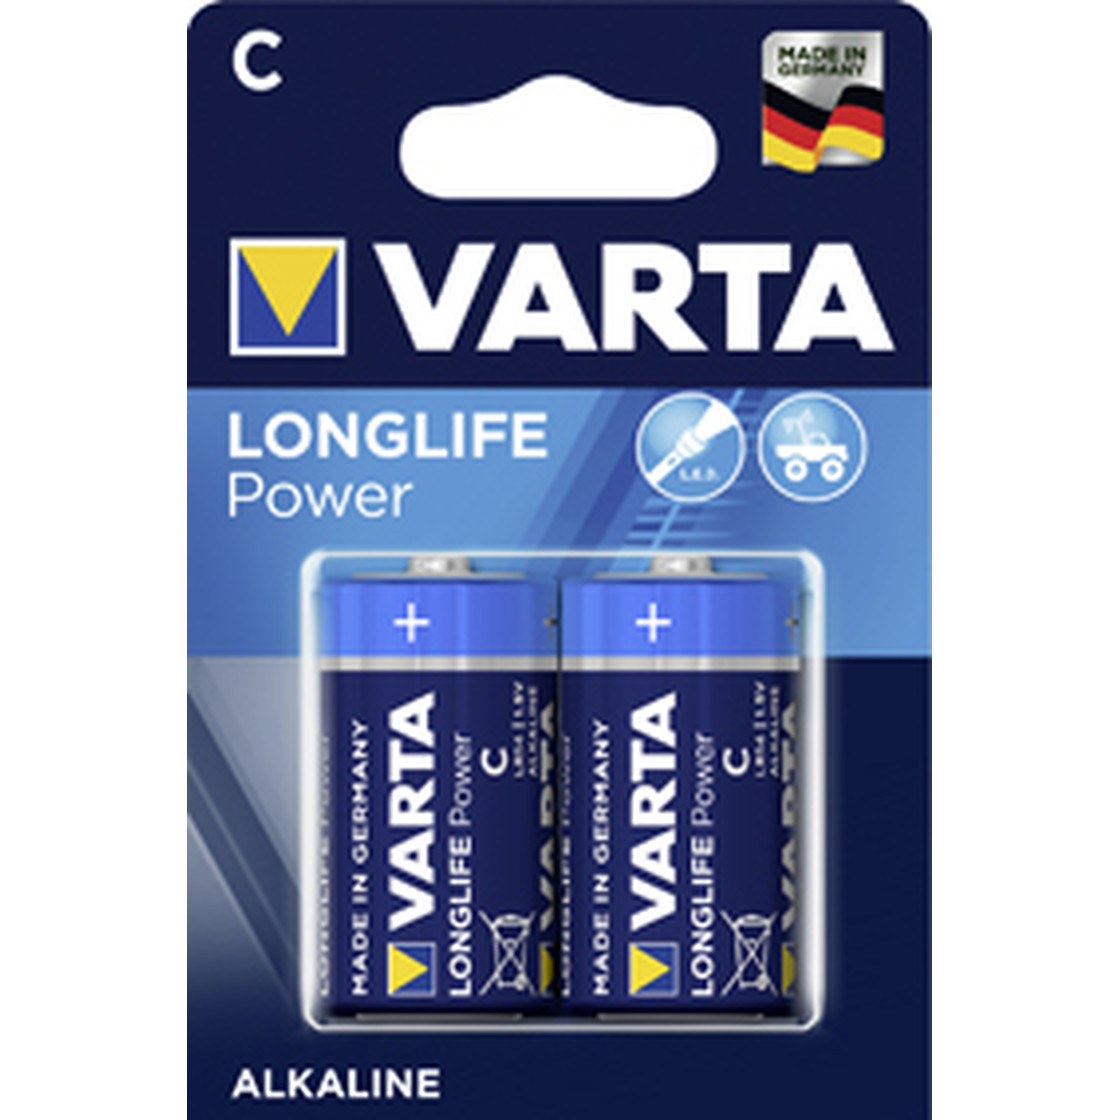 Varta LongLife Power 4914 Batterien LR14 C Baby 1,5V 2er